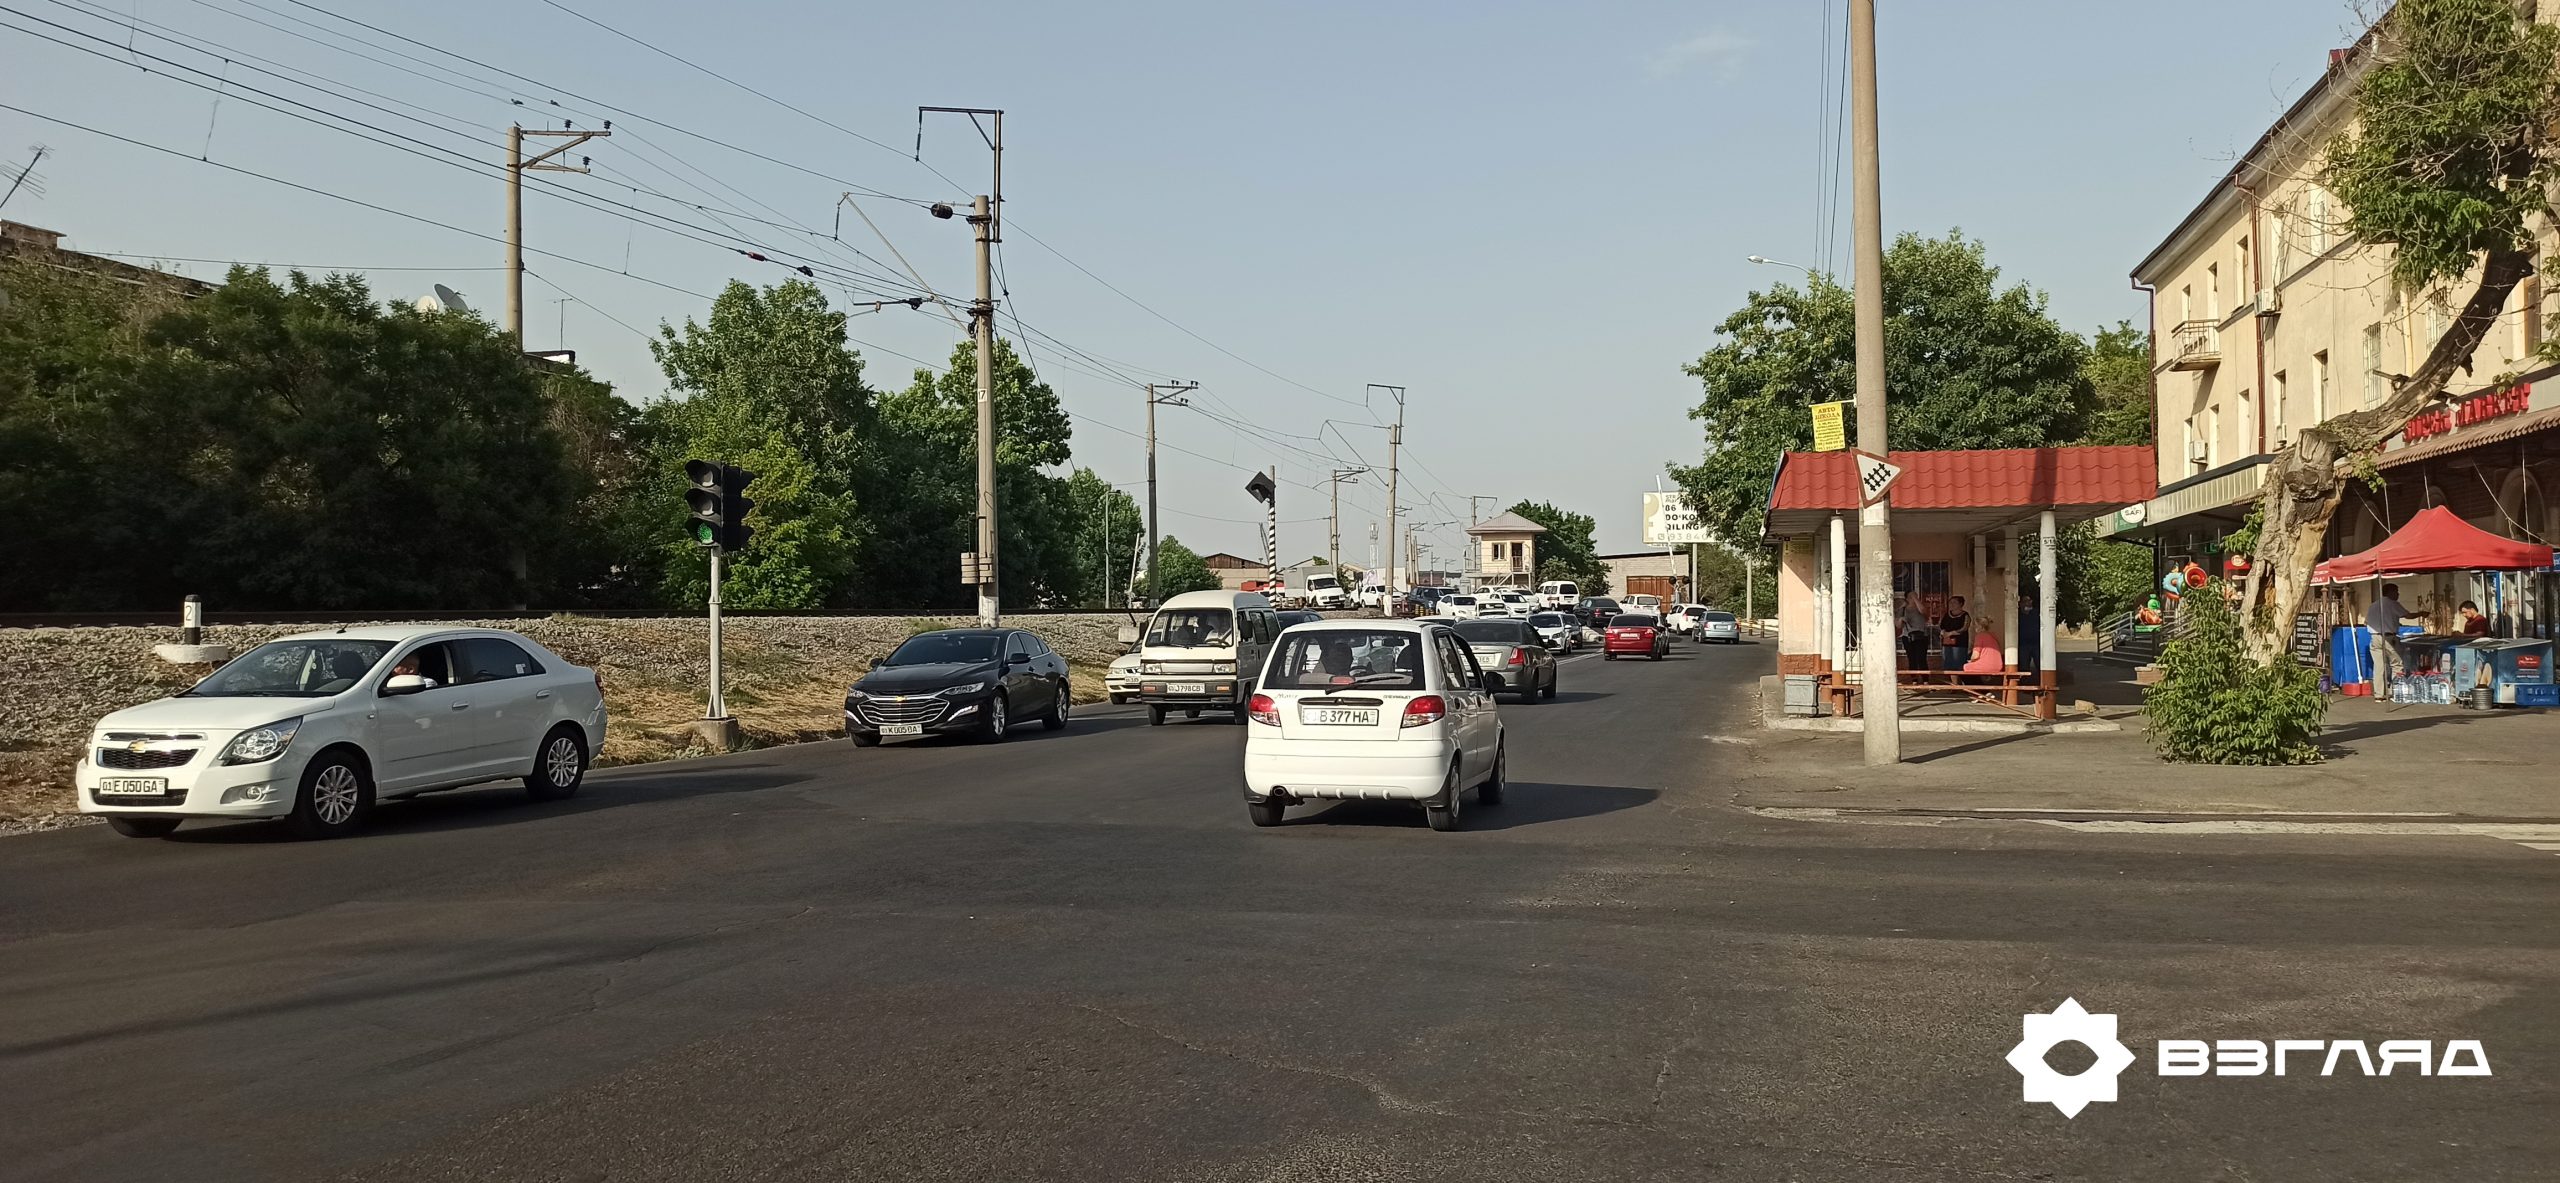 Некоторые таксисты в Узбекистане больше не обязаны проходить аттестацию каждые пять лет для получения лицензии